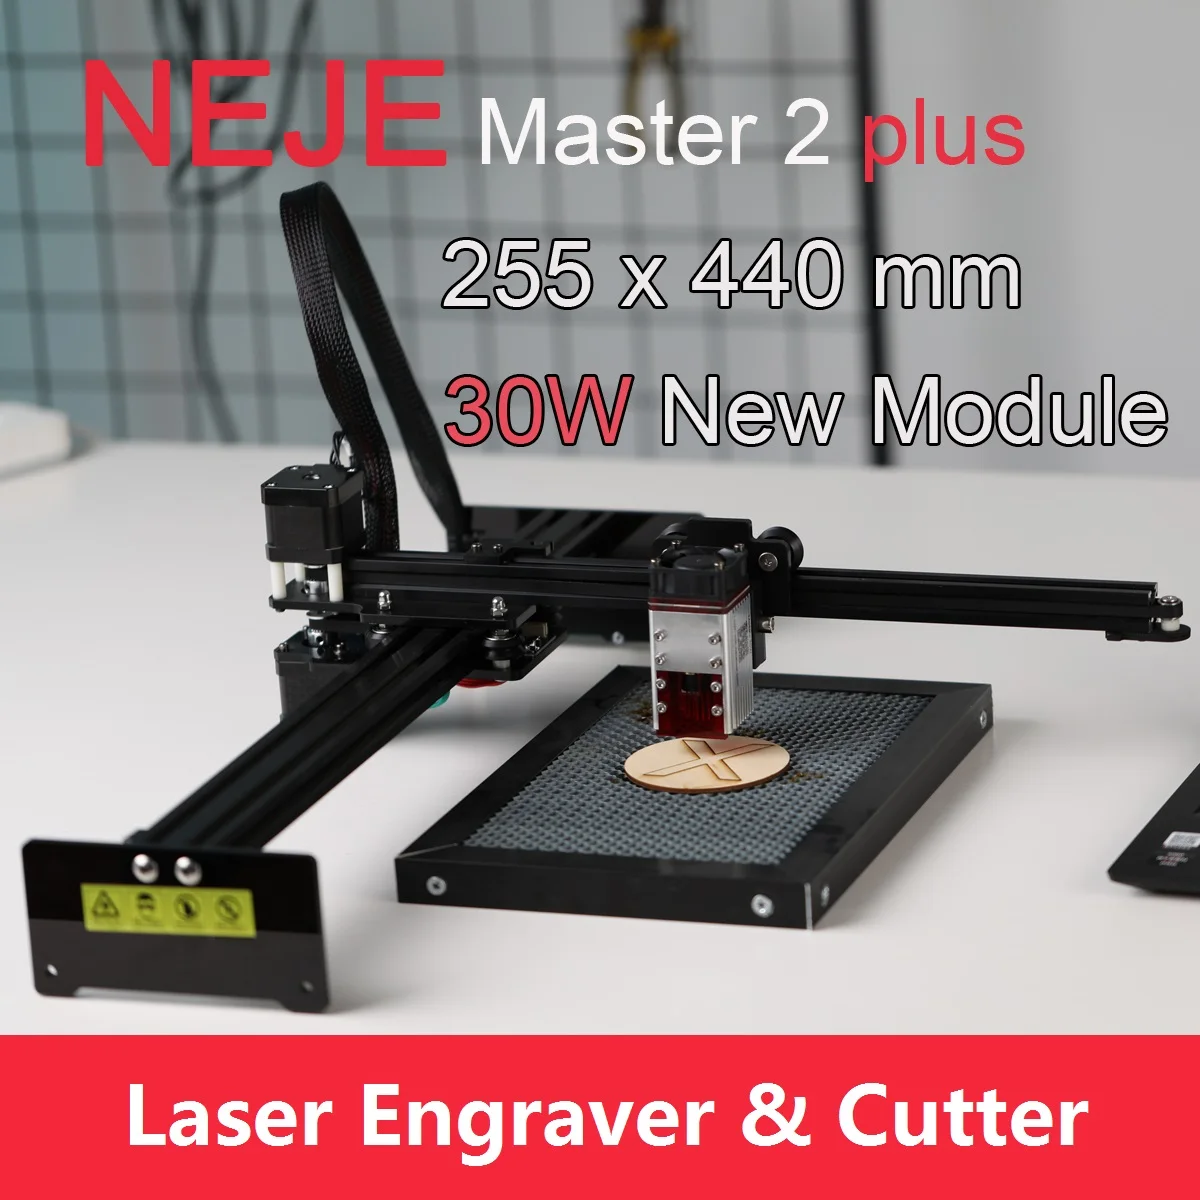 

Лазерный гравер NEJE Master 2 Plus, лазерный резак, фрезерный станок с лазерной головкой 30 Вт, фокусируемая лазерная головка, управление через прило...